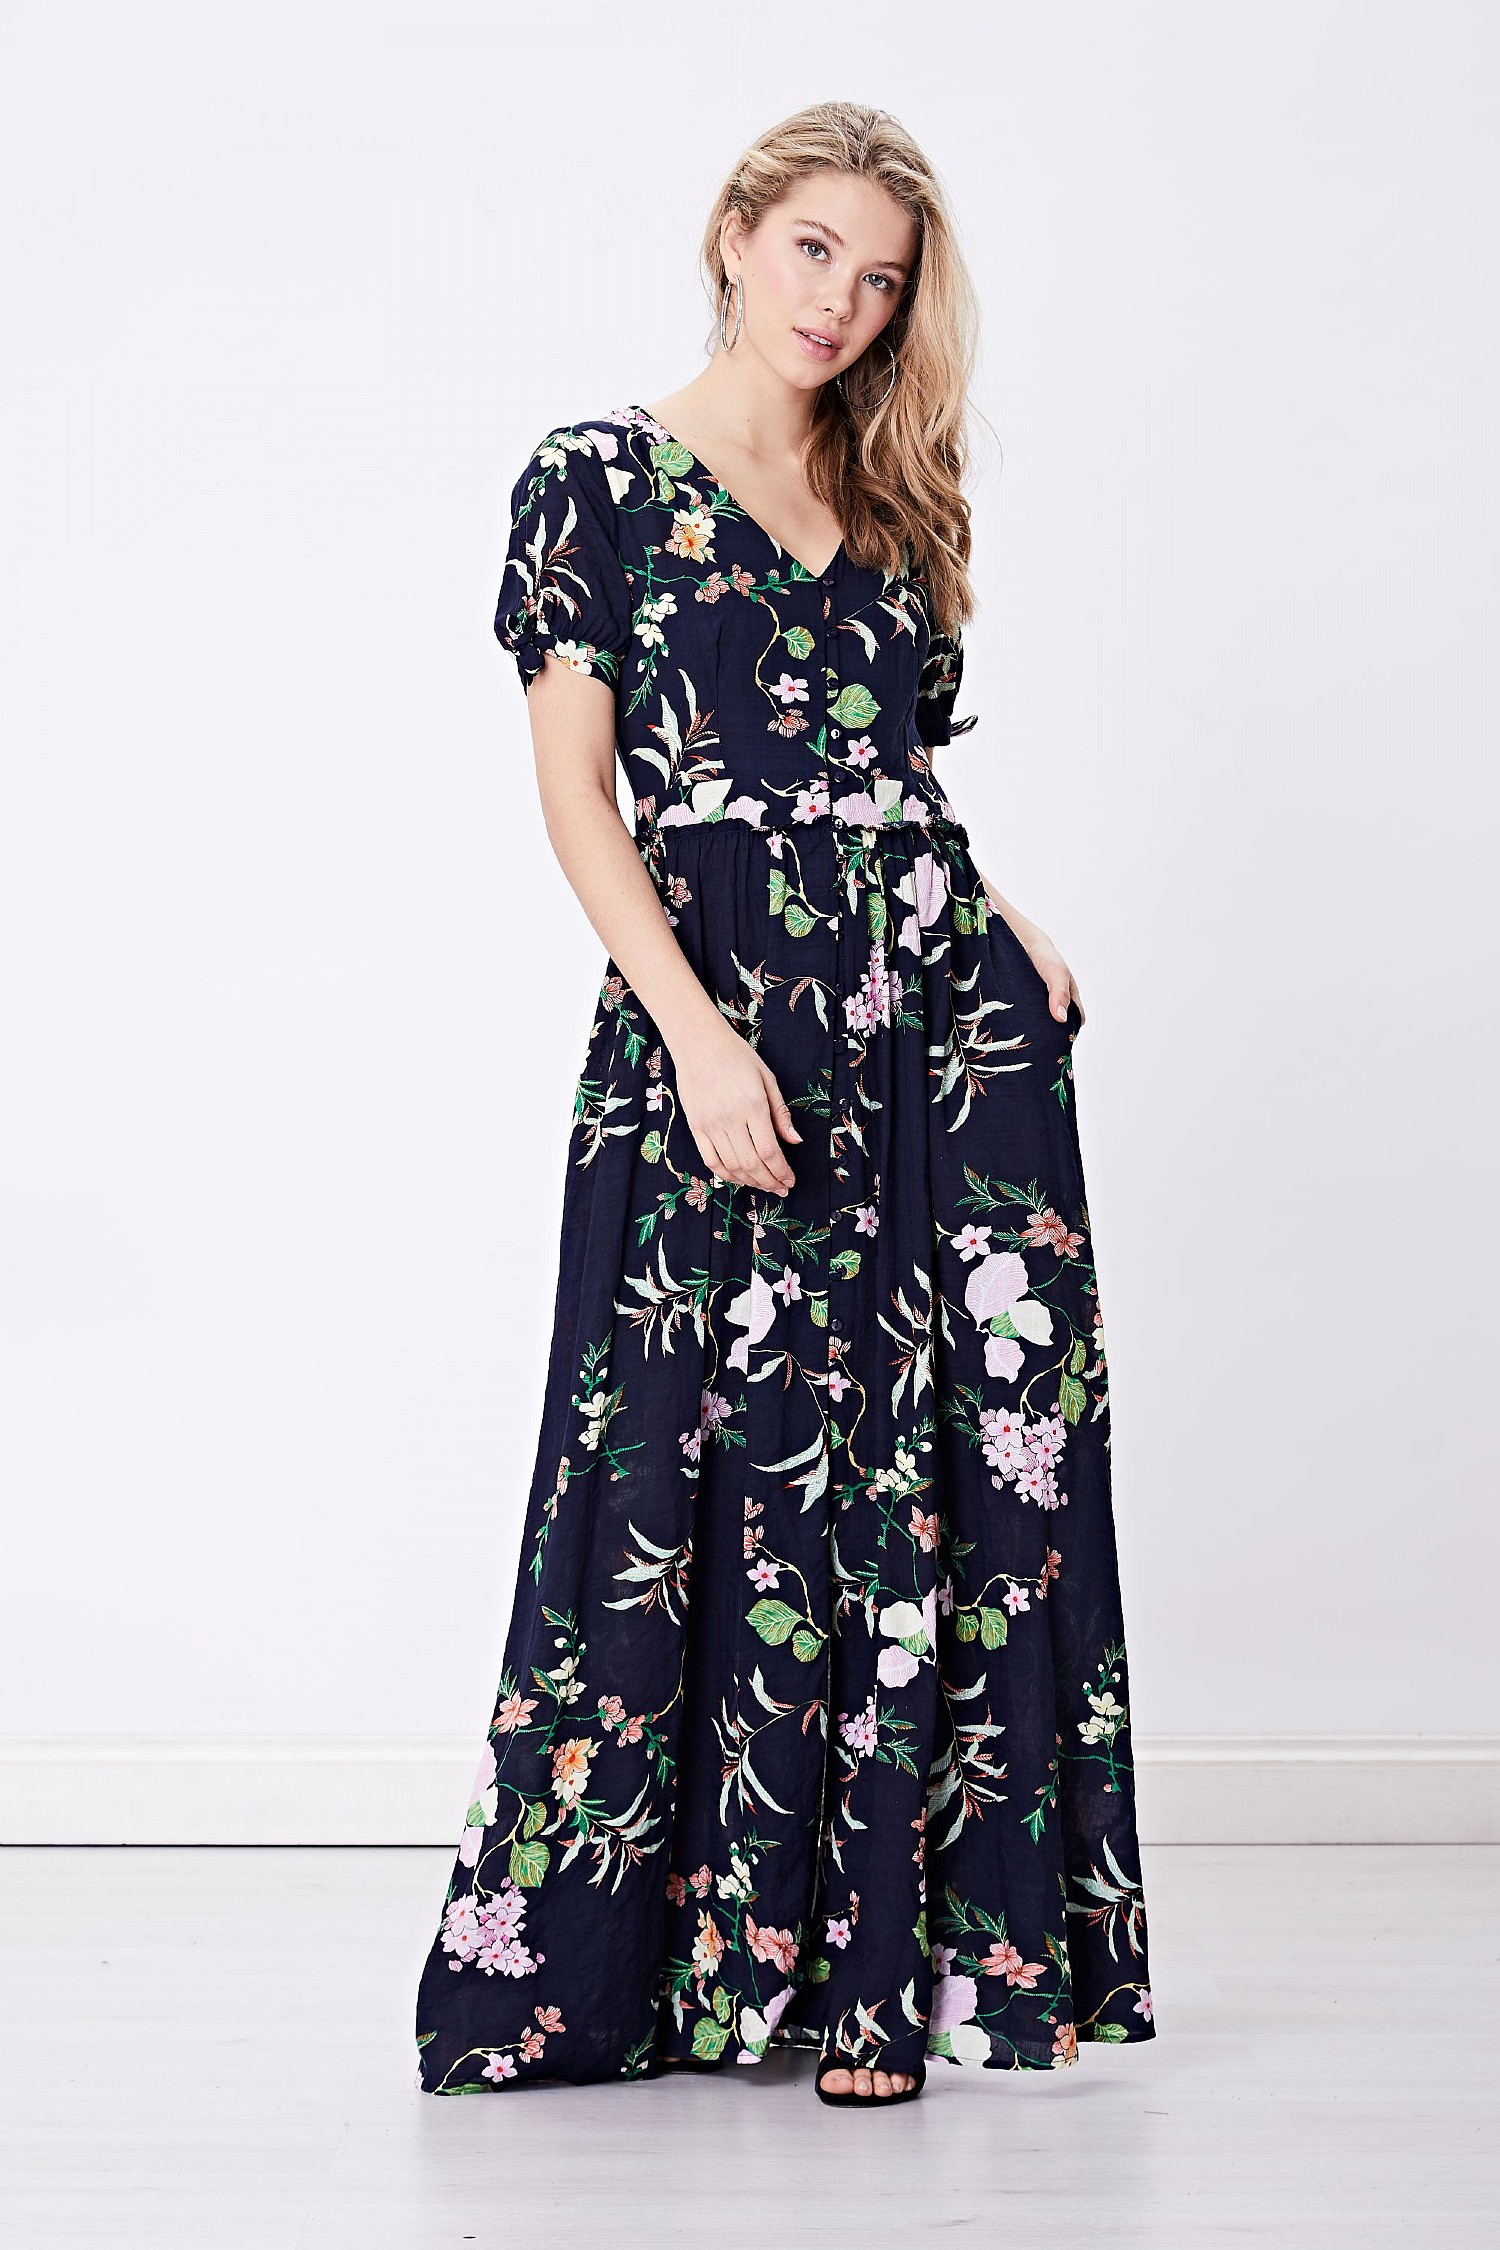 velvet dress design 2019